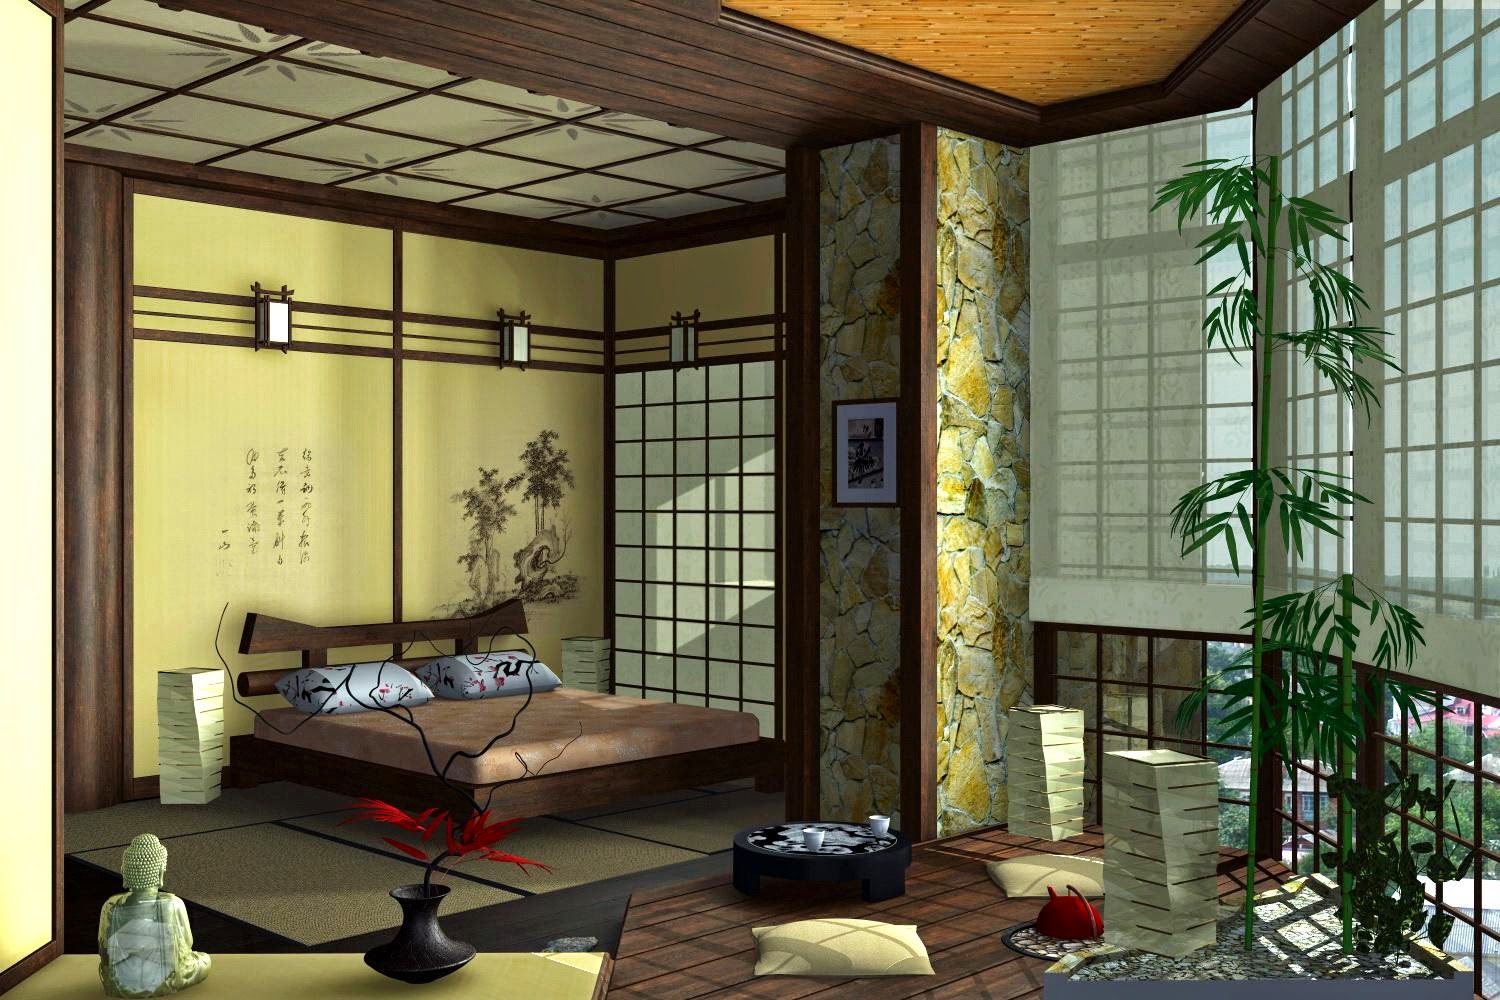 Muebles X Muebles: Decorar dormitorio con estilo zen o japones